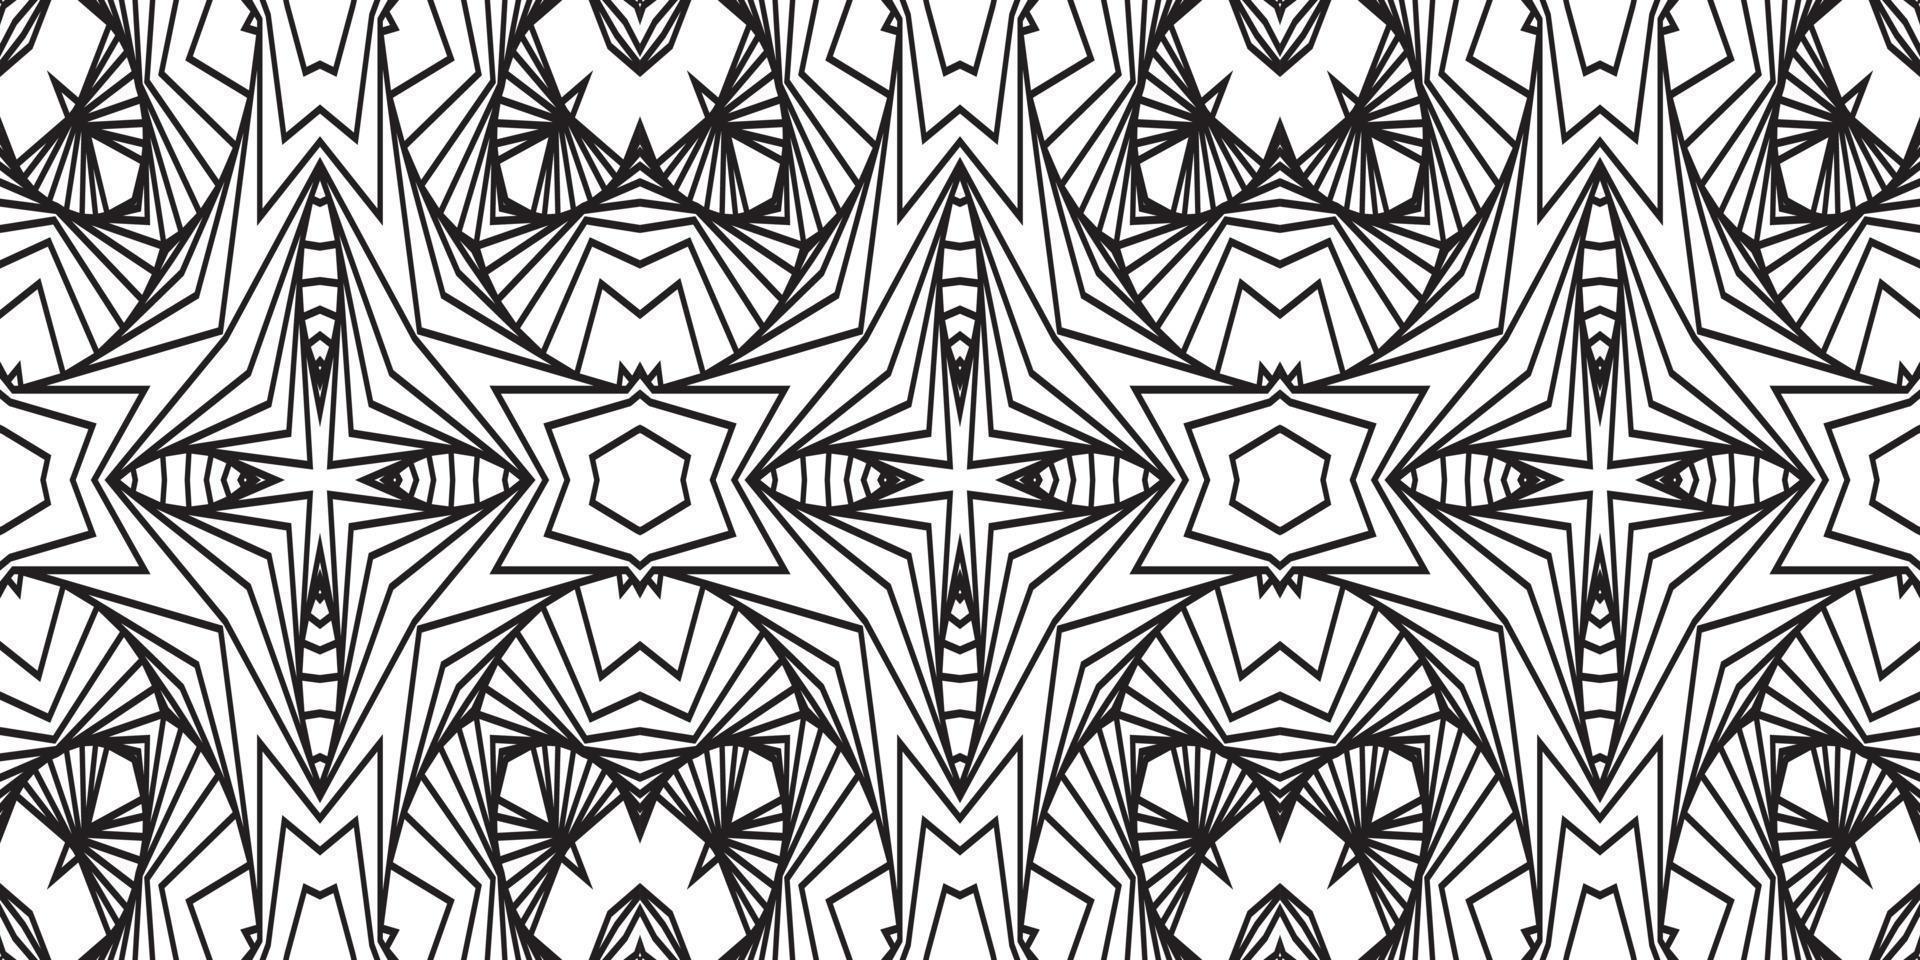 padrão abstrato monocromático de listras onduladas ou relevo 3d ondulado, ilustração na moda moderna de listra curva torcida de vetor de fundo branco preto. padronizar,